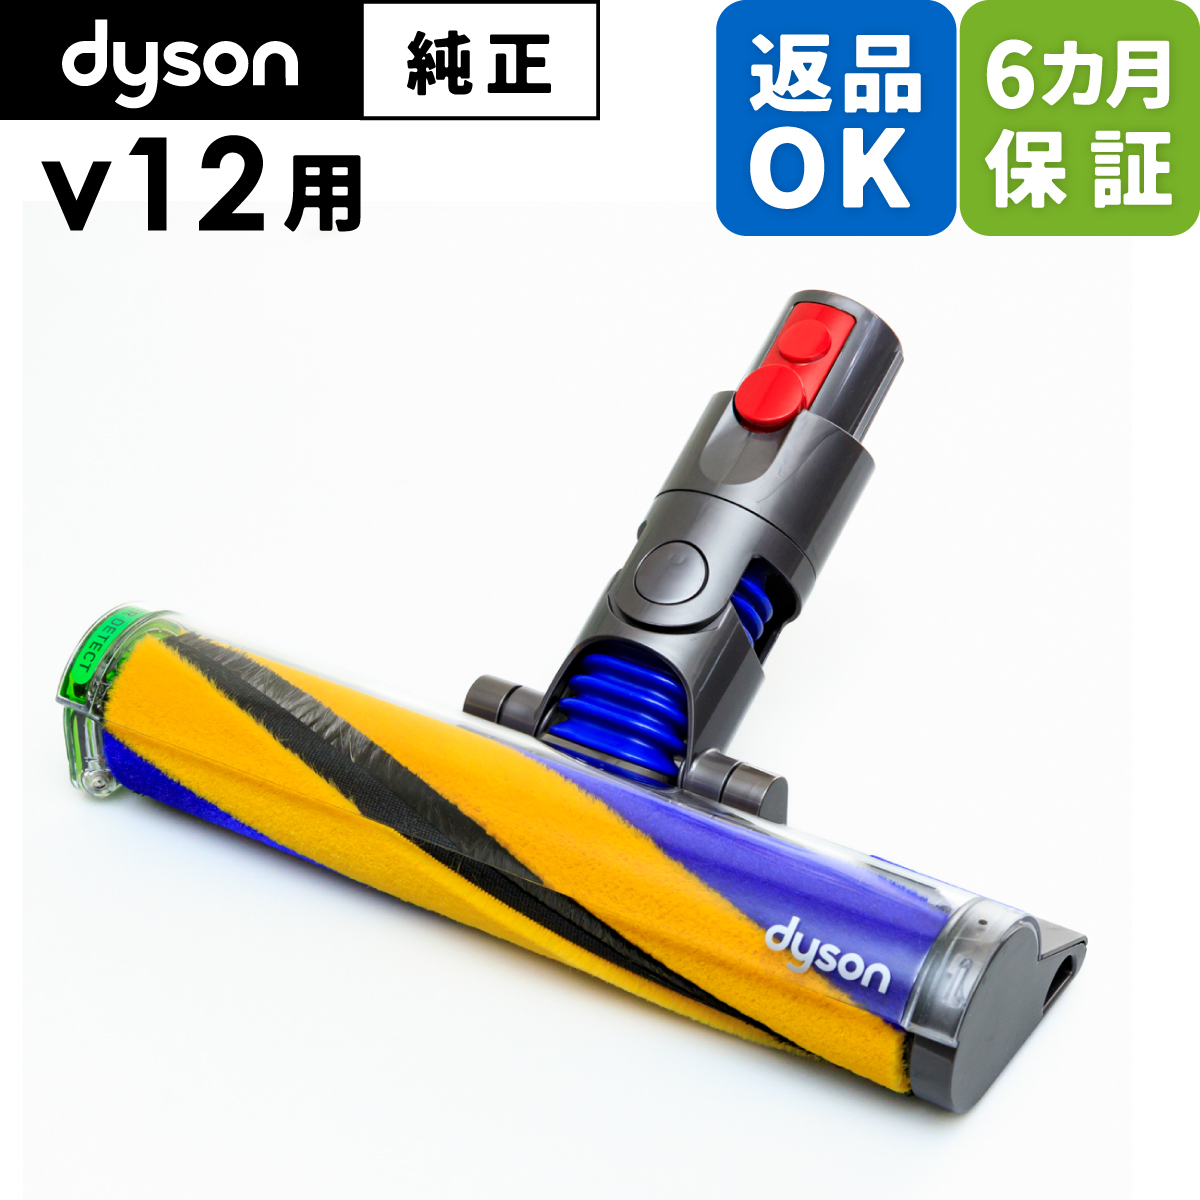 Dyson ダイソン 掃除機 純正 パーツ 返品OK ソフトローラー レーザースリムフラフィクリーナーヘッド V12 Detect Slim 適合  SV20 モデル 部品 交換